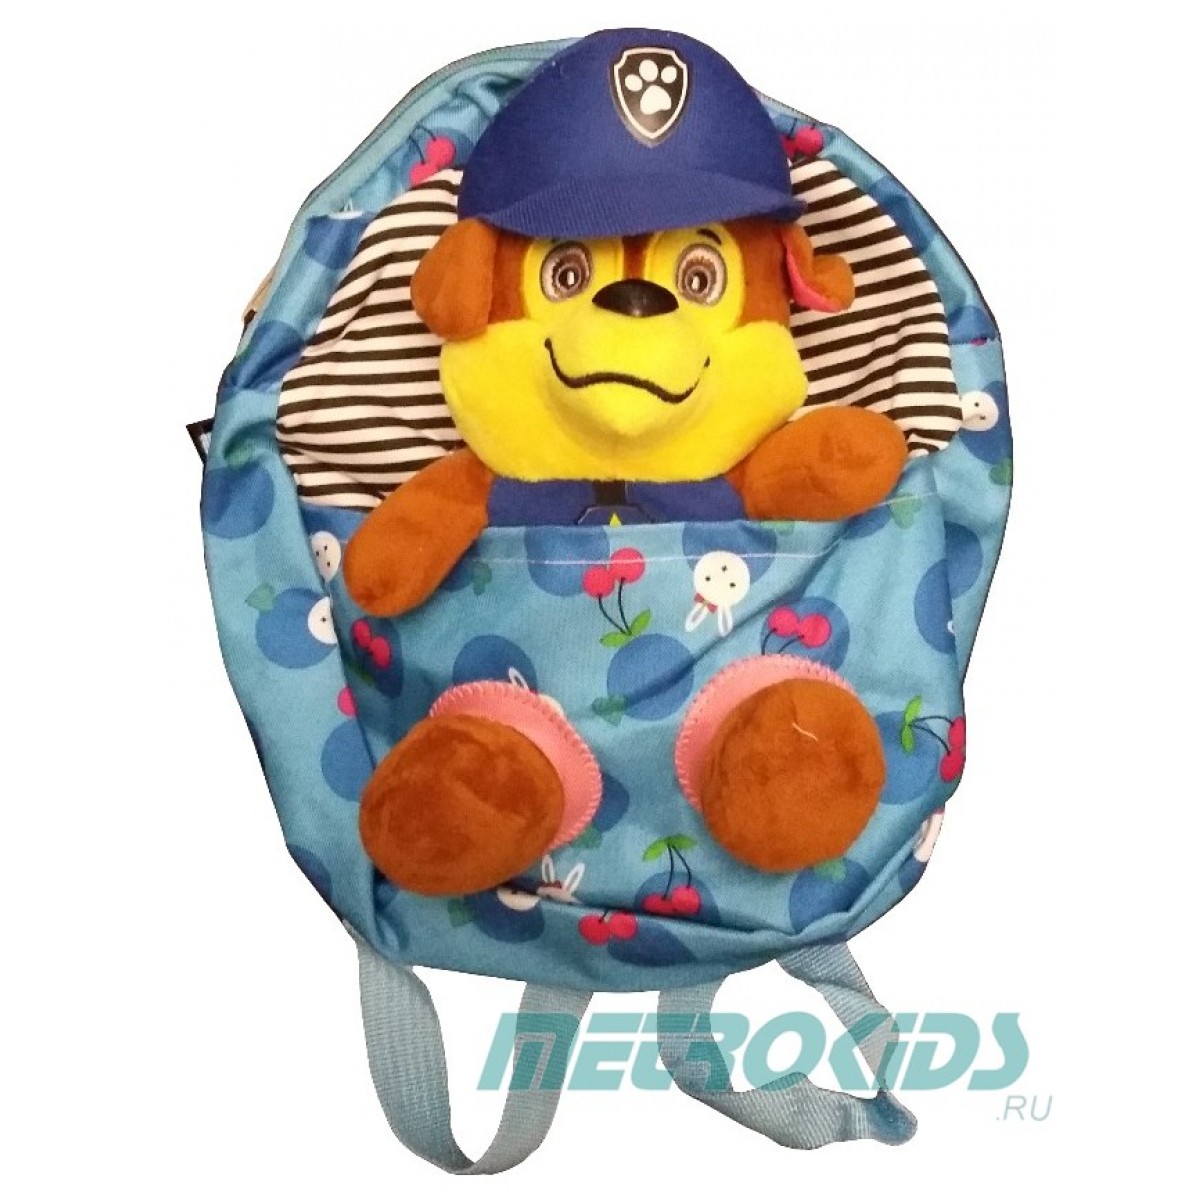 Детский рюкзак с игрушкой, Гонщик, Щенячий патруль,Chase, Paw Patrol, MK11096